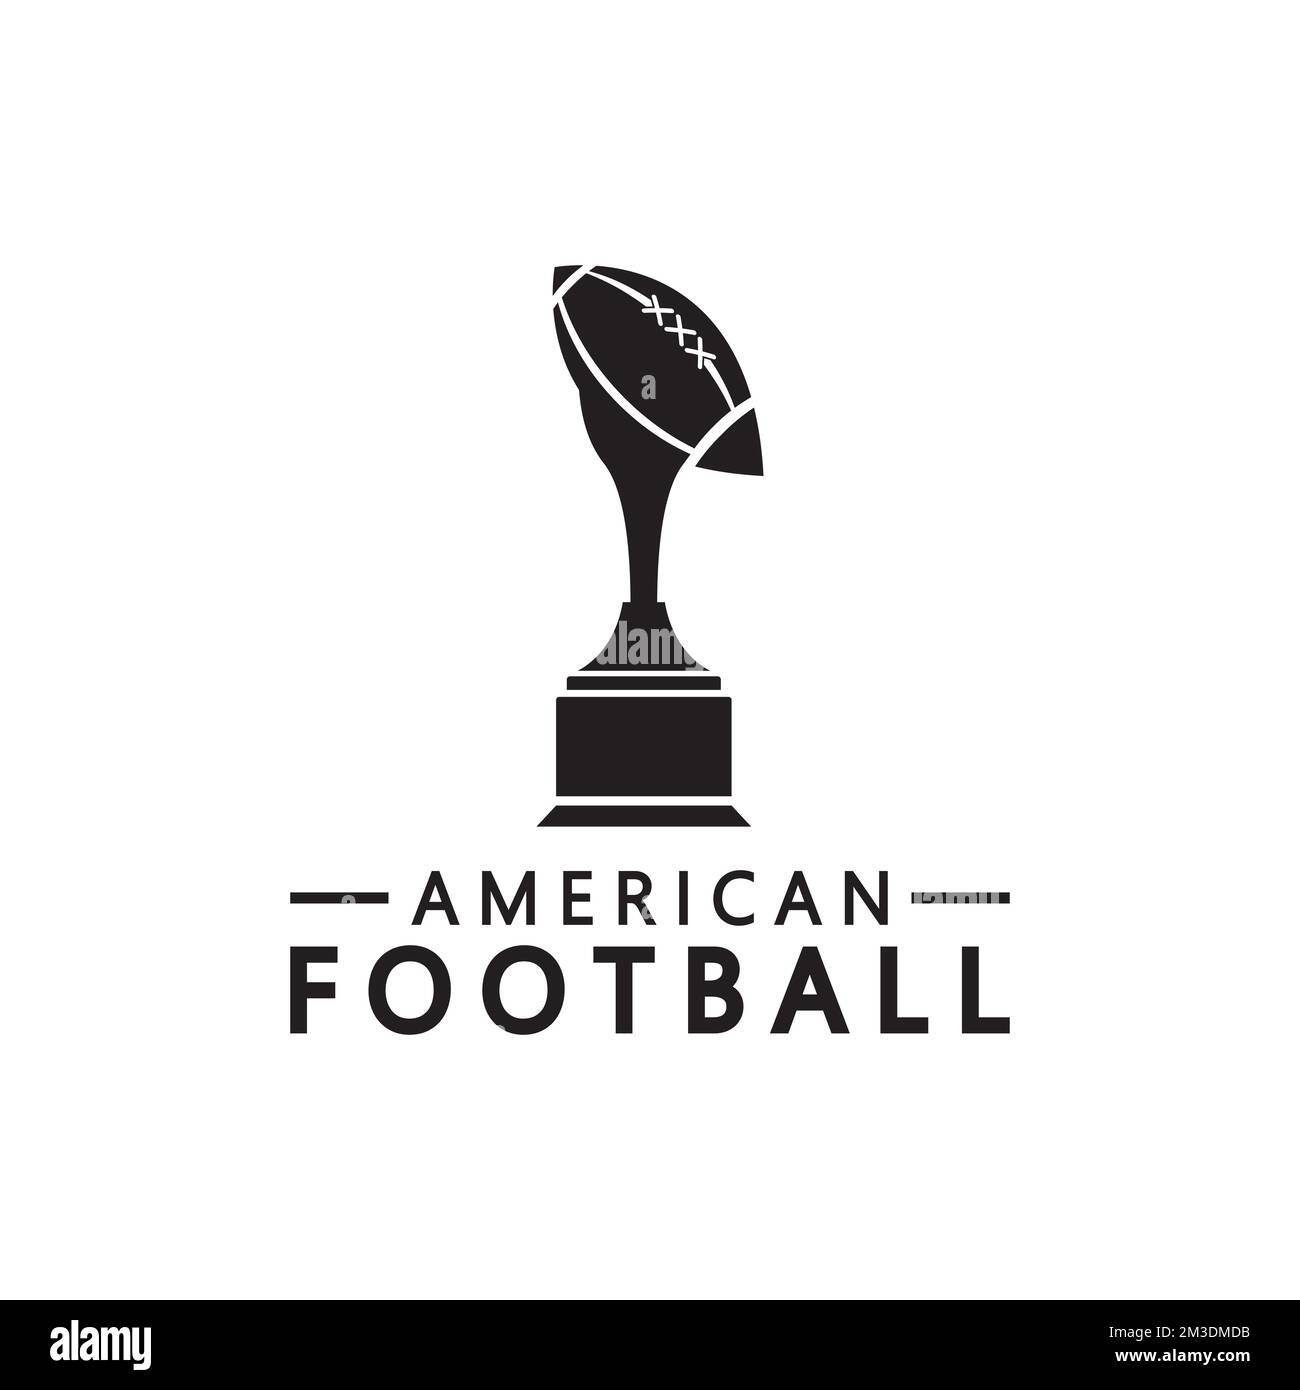 Sieger American Football Championship Trophy Logo Design Vektor Symbolvorlage. American-Football-Trophäe für den Siegerpreis Stock Vektor